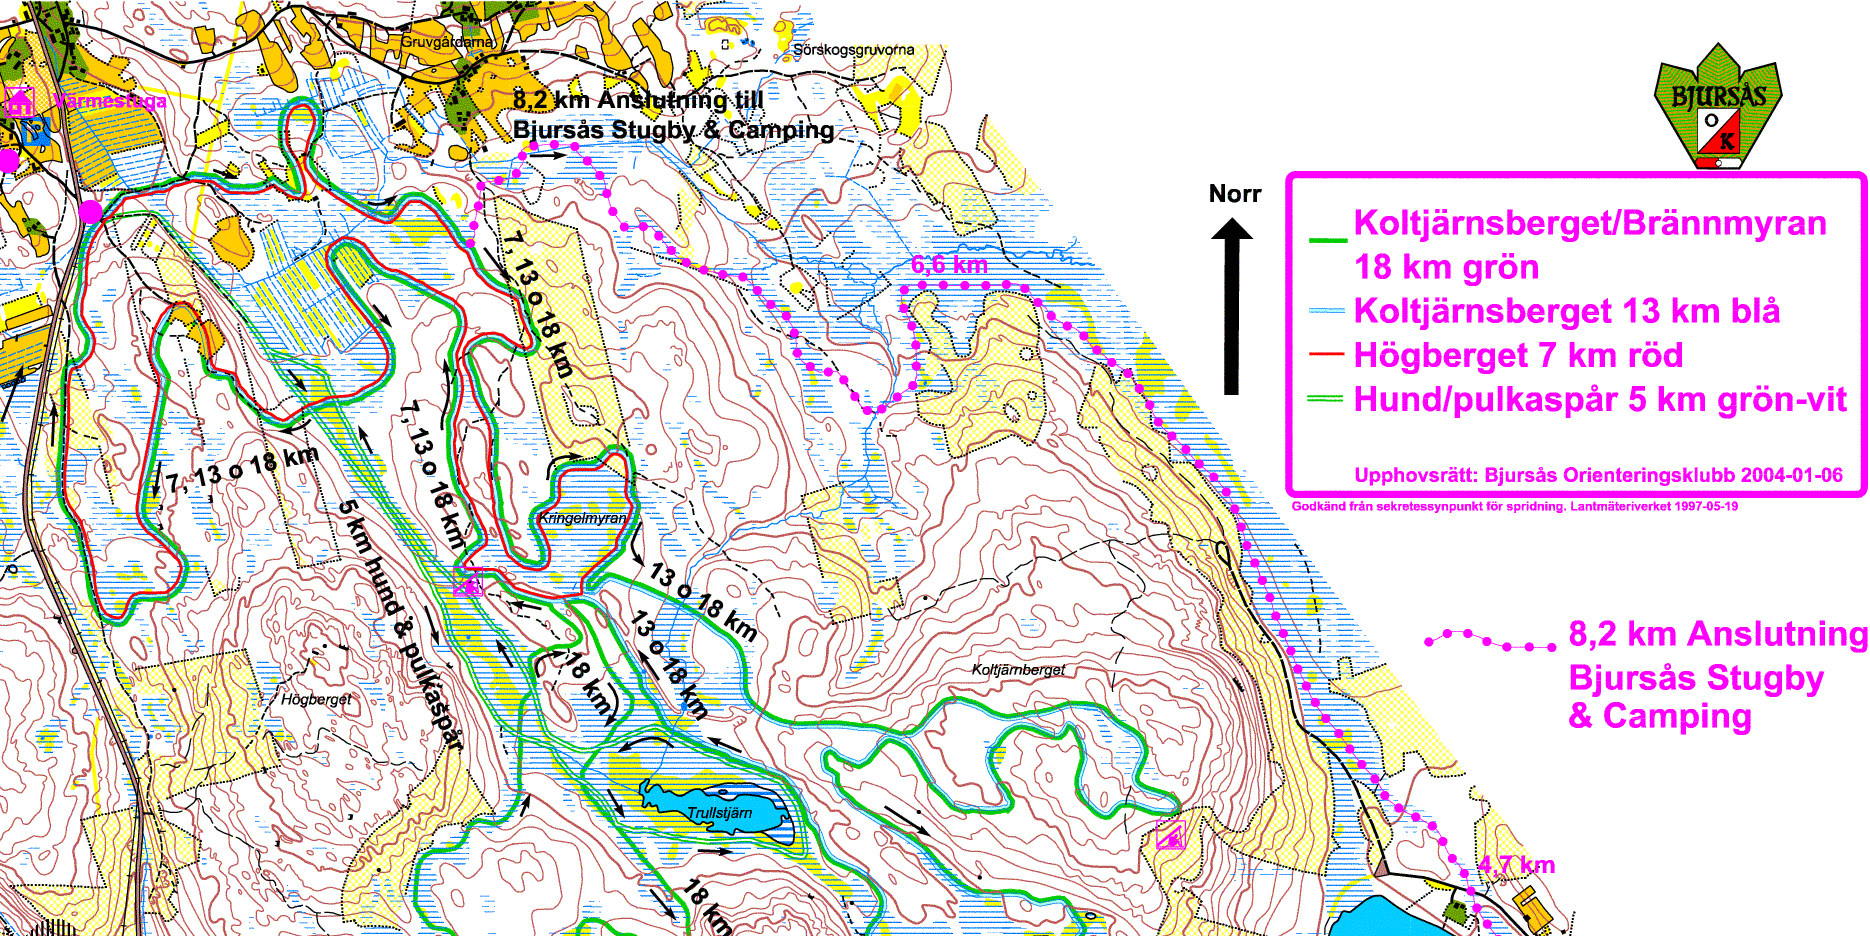 Spårkarta, Bjursås Stugby & Camping, anslutning till Sörskog, del 3